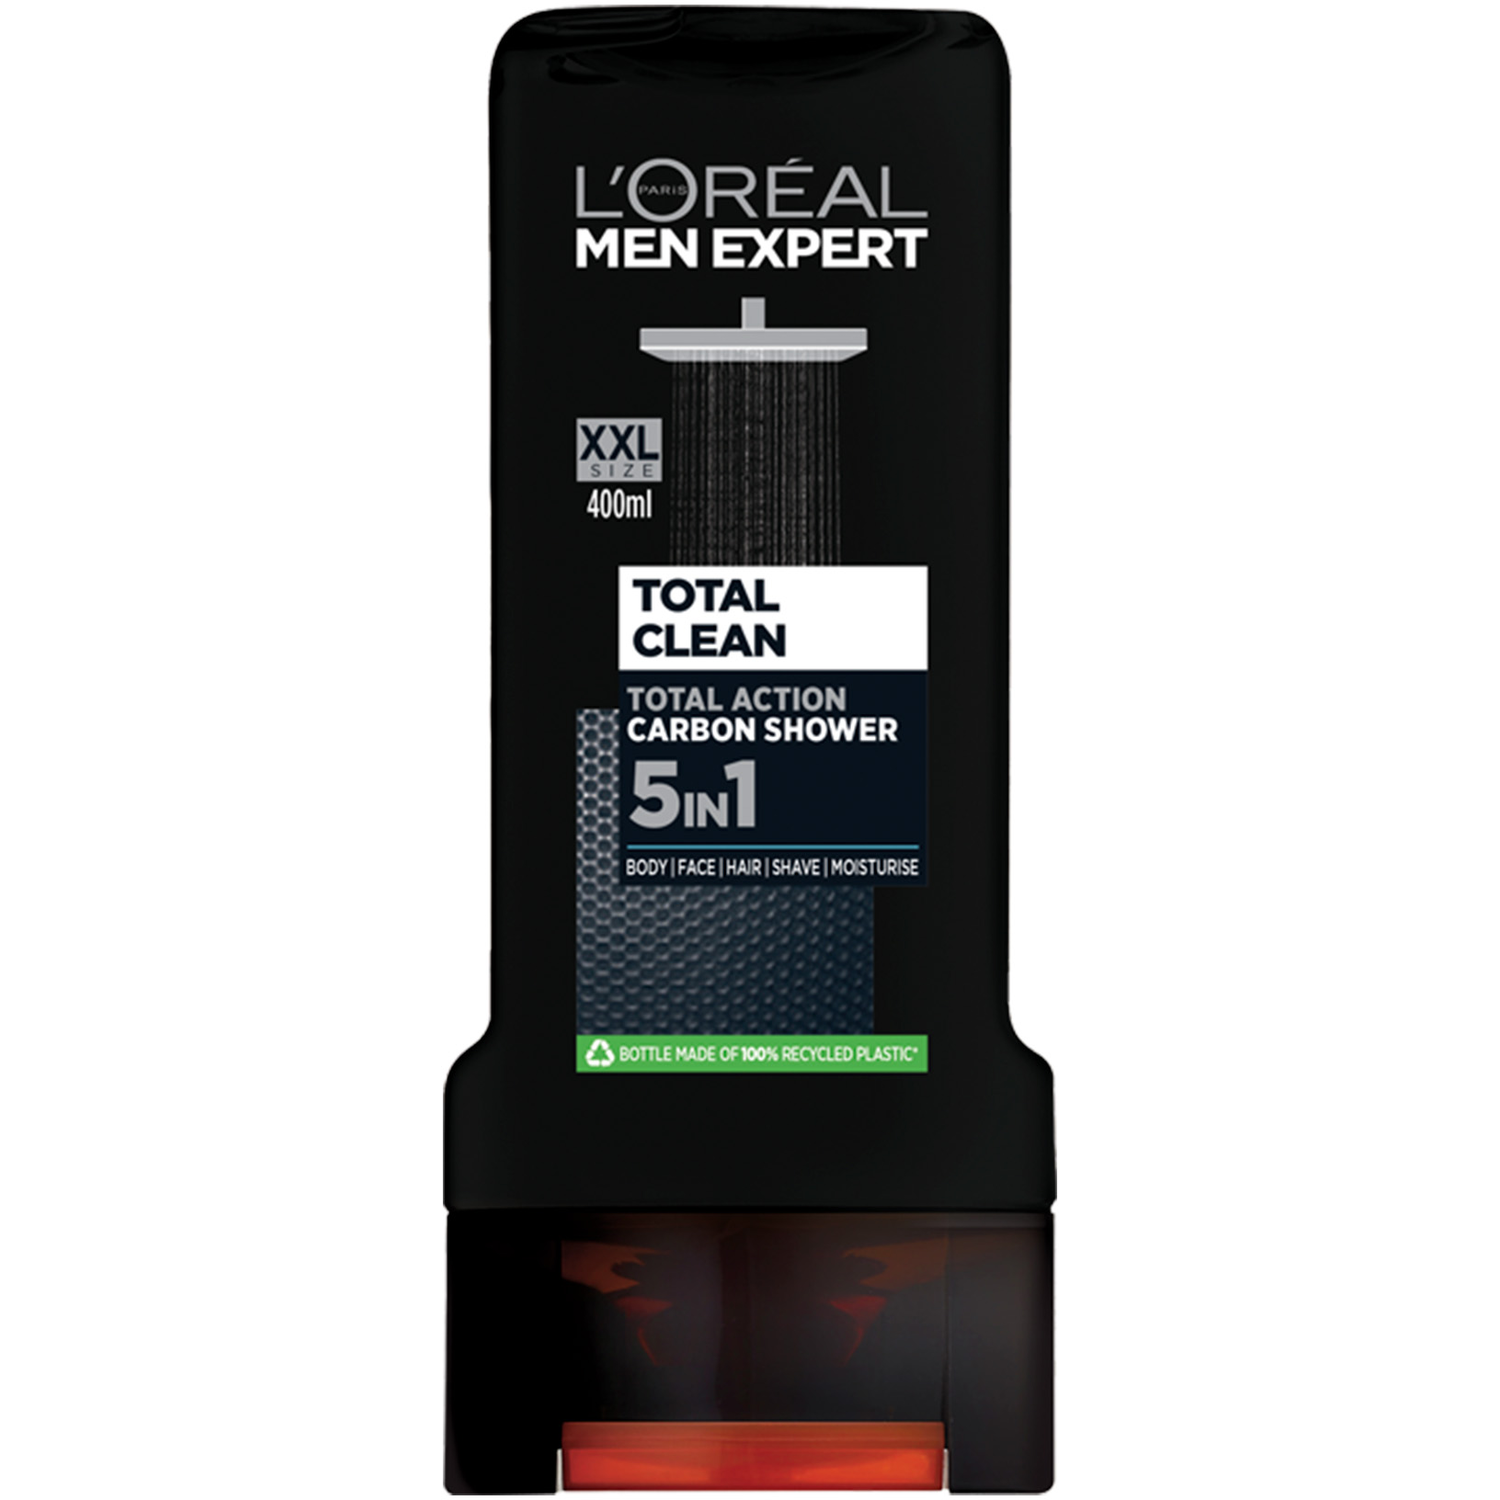 Men Expert Total Clean Carbon Shower Gel 400ml - Black Image